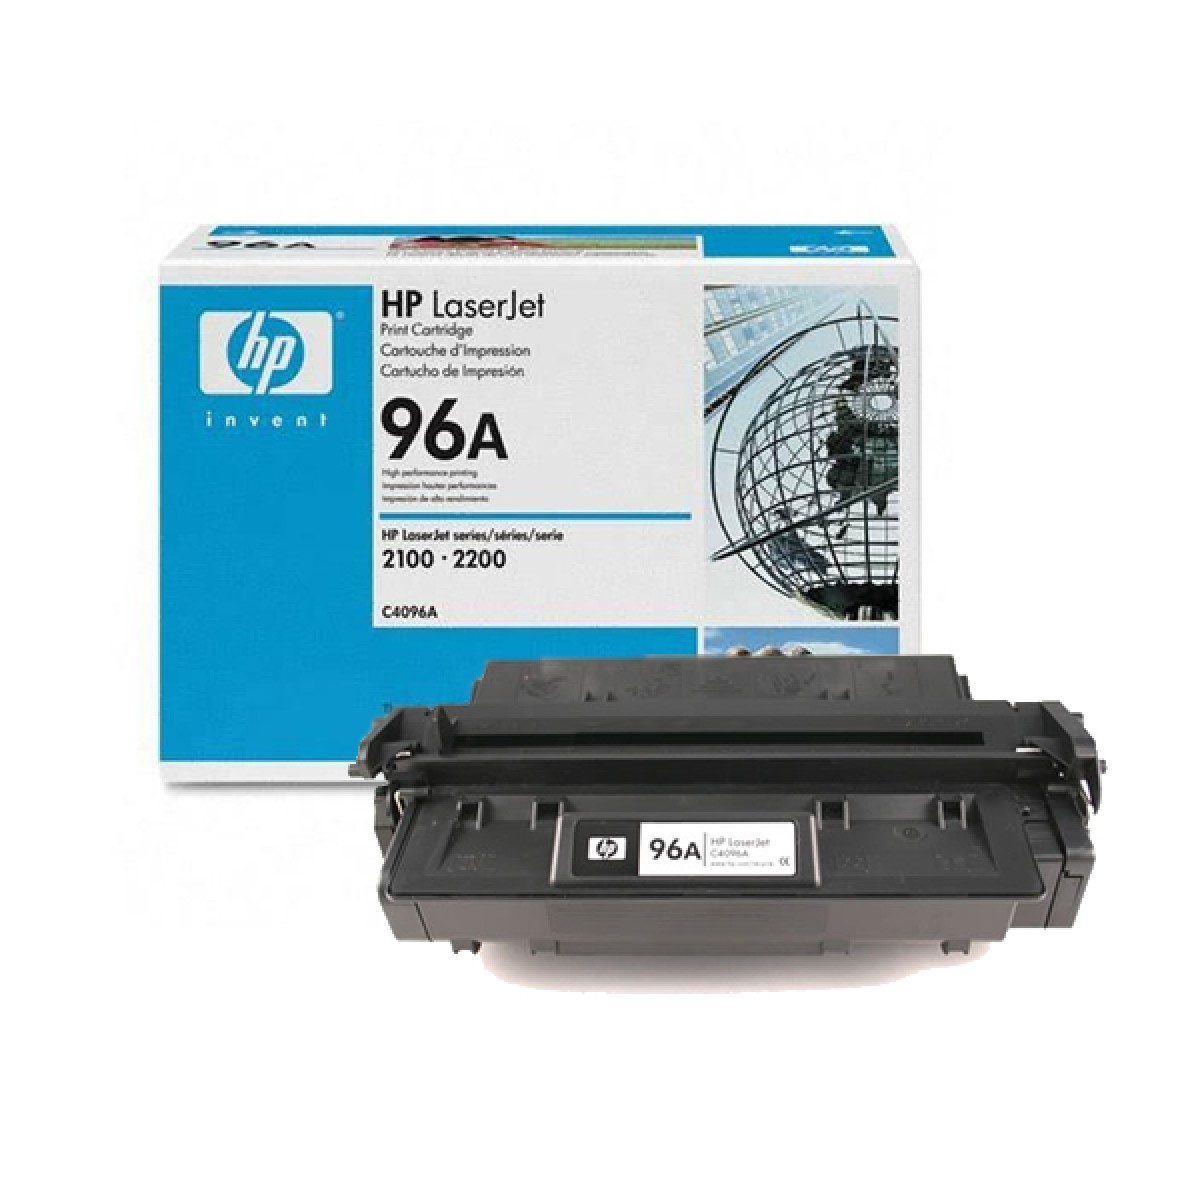 HP LaserJet 2200 C4096A HP No 96A Laser Cartridge